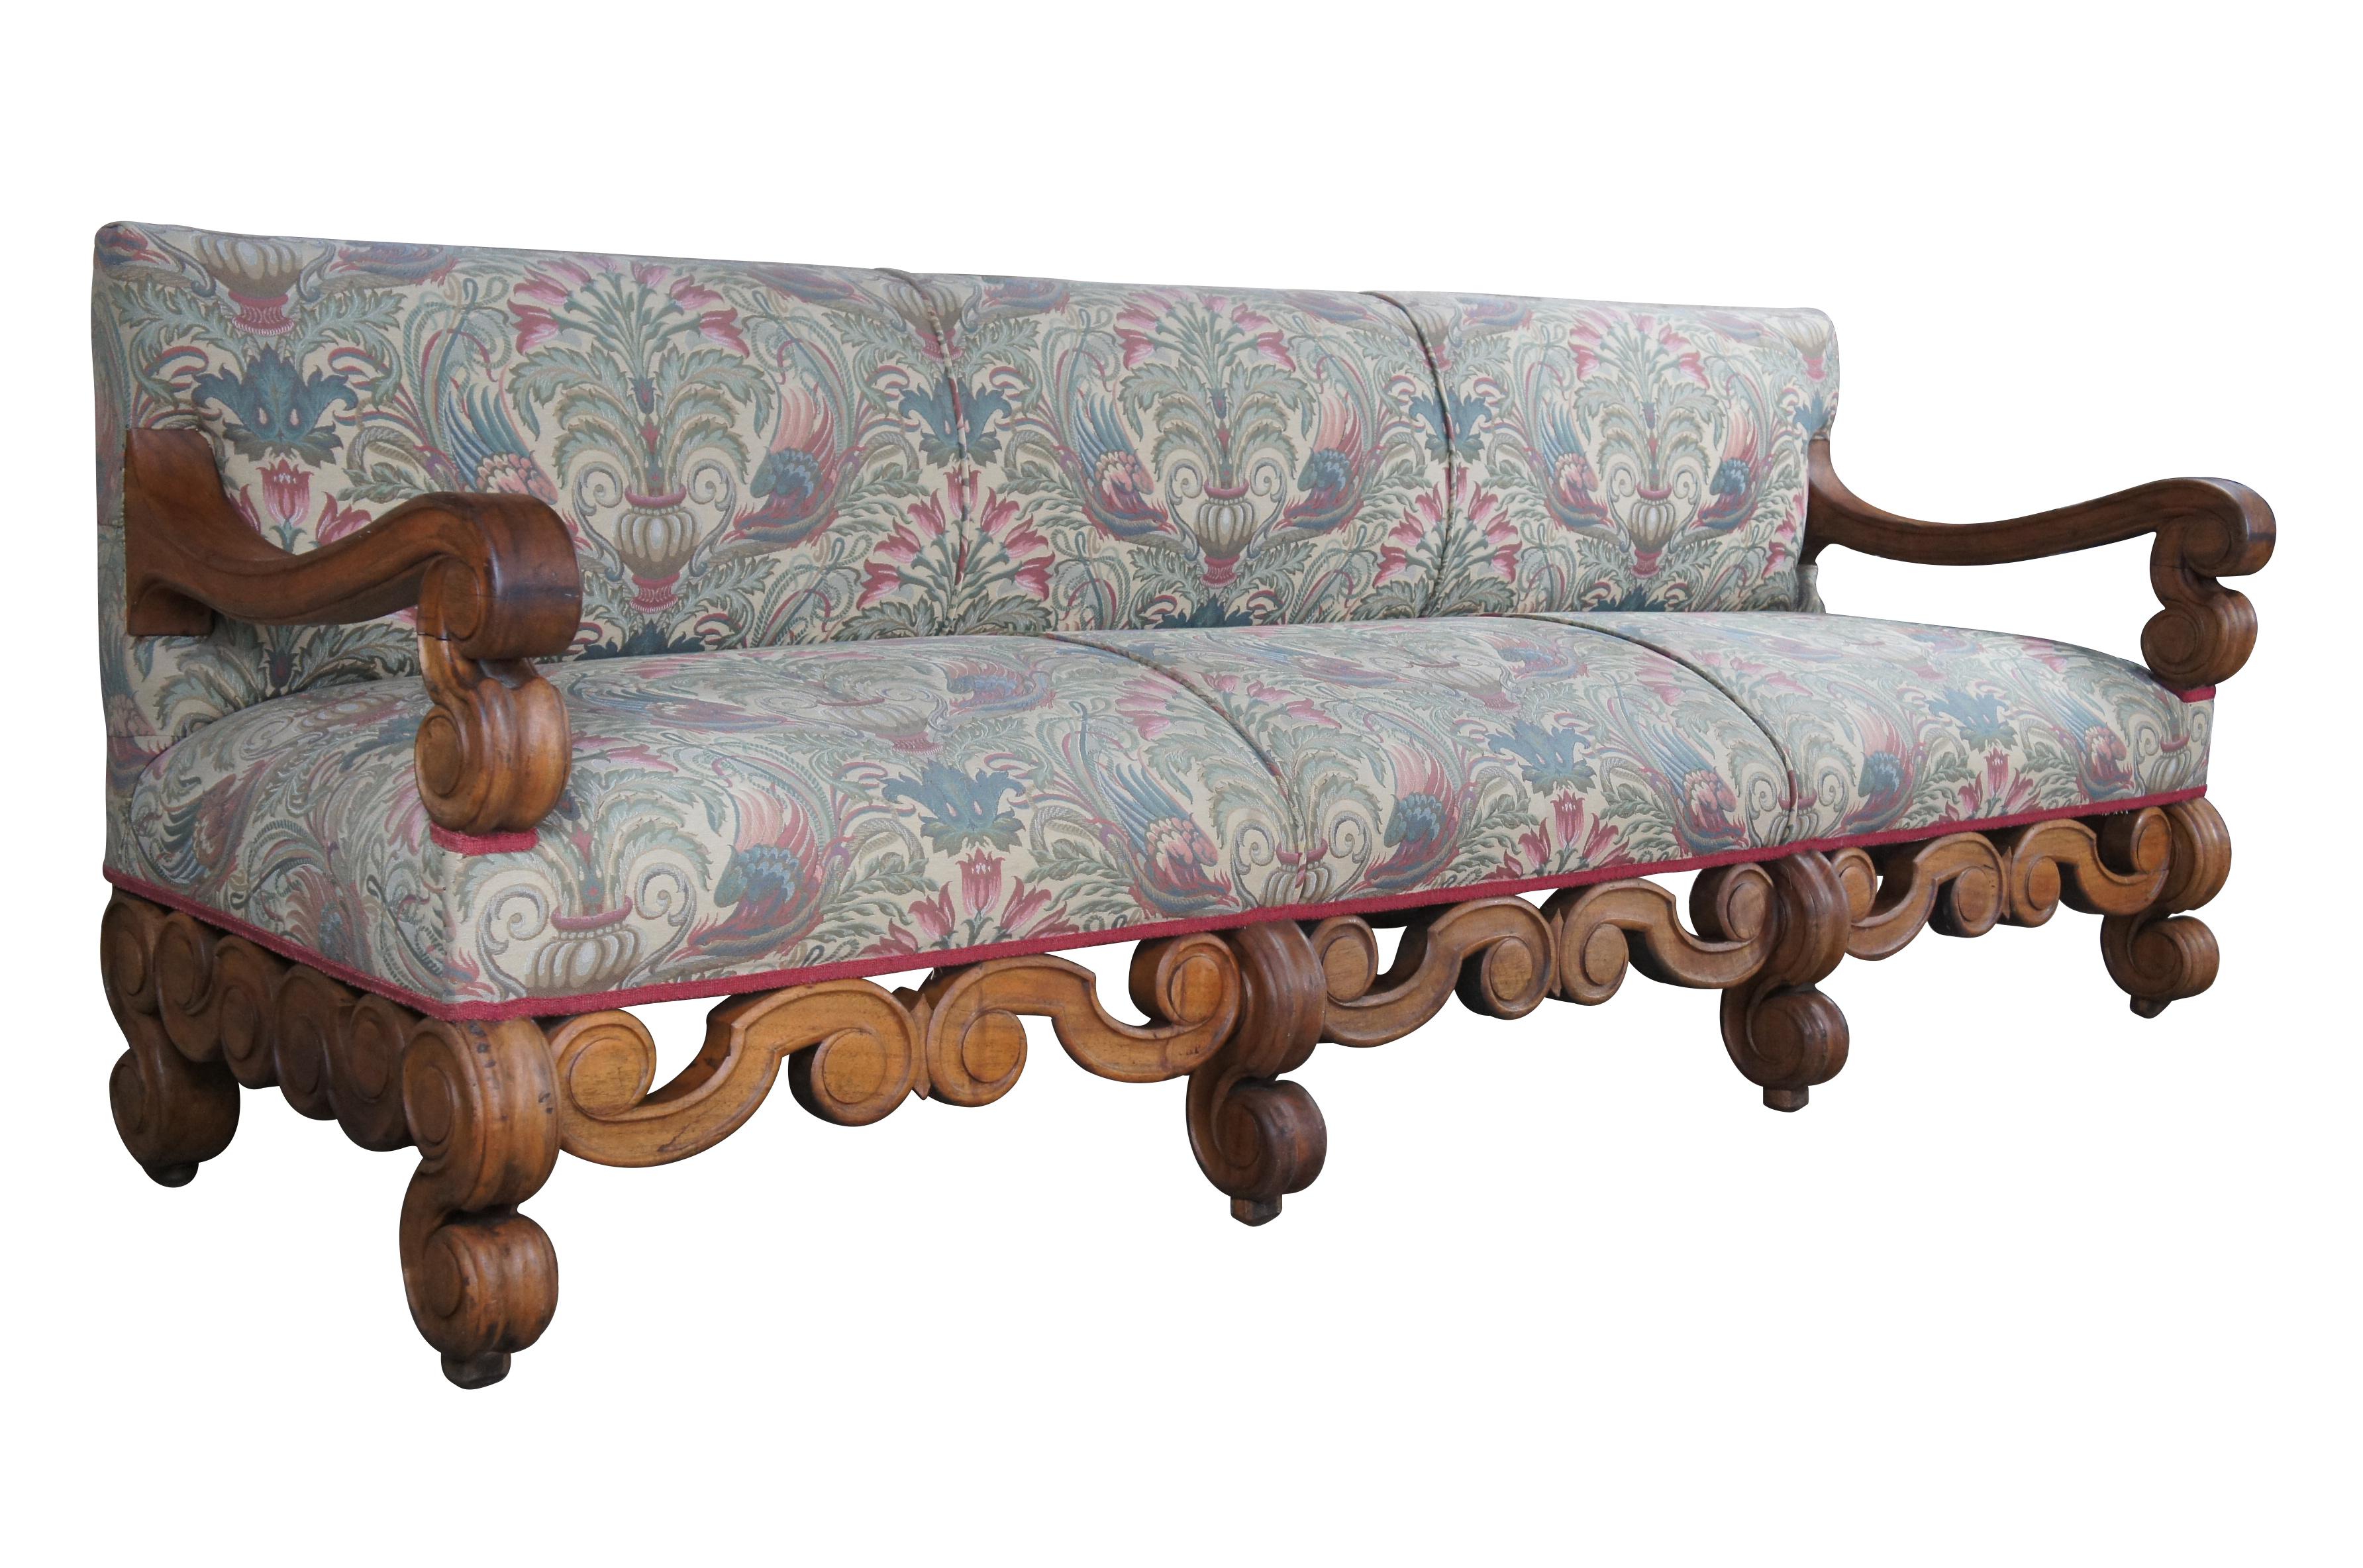 Eine beeindruckende William & Mary Mahagoni-Sitzgruppe oder ein Sofa, circa 18. Jahrhundert.  Mit schwerem, geschwungenem Rahmen, nach unten offenen Armen, sechs Beinen und neoklassischer Blumenpolsterung.  Die wunderschön geschwungenen 